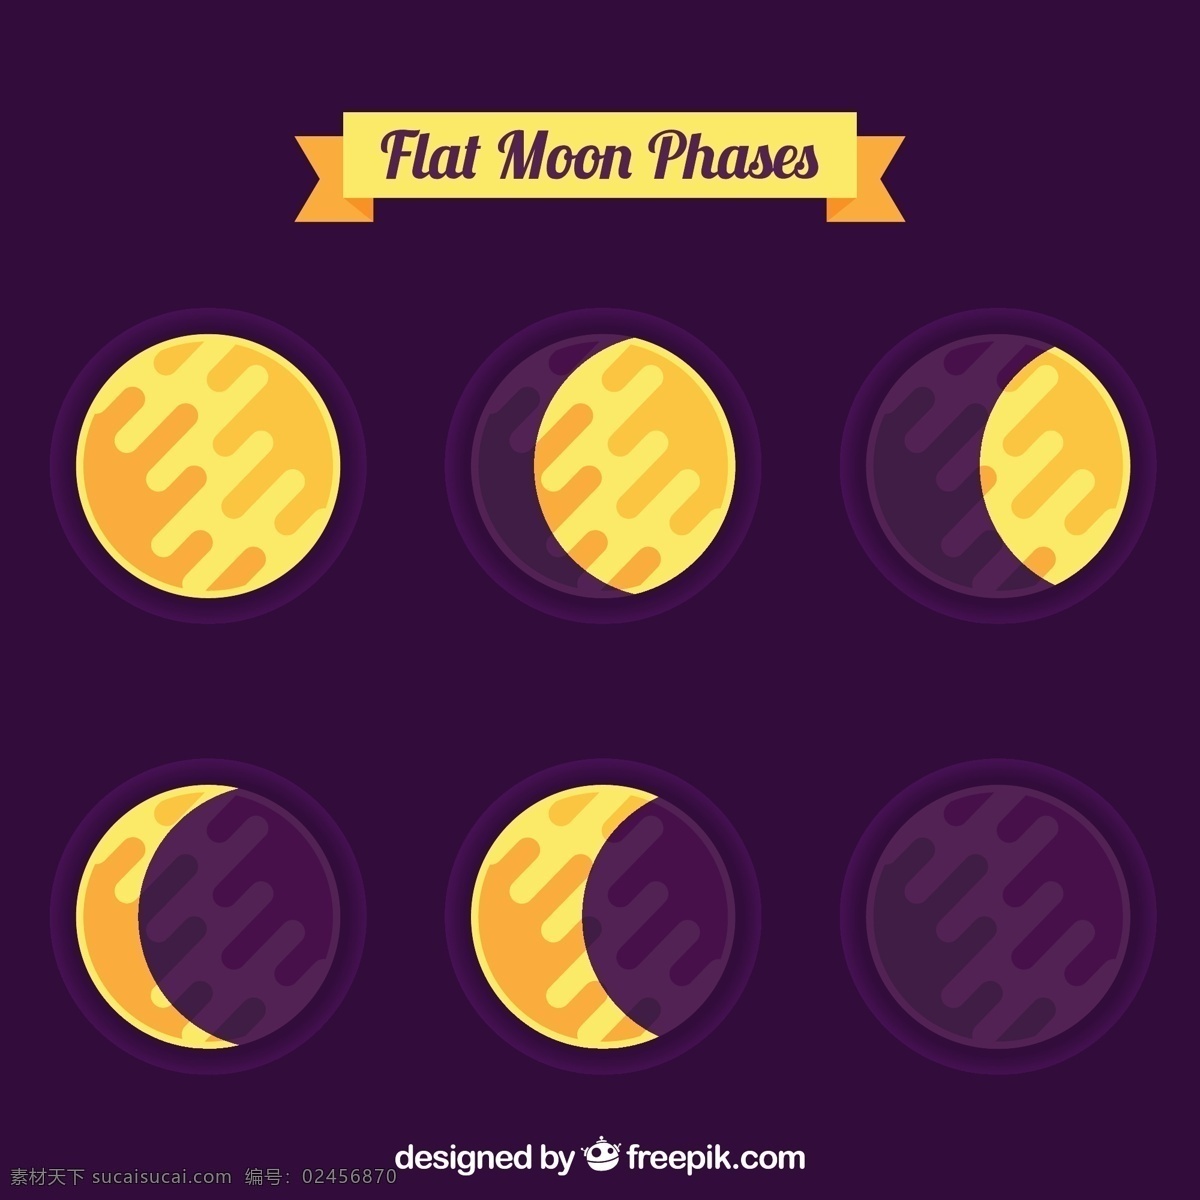 平面设计 中 月亮 相位 日历 光 天空 数字 时间 平面 夜晚 时间表 计划者 夜空 宇宙 年 卫星 季节 占星术 月 满月 周计划者